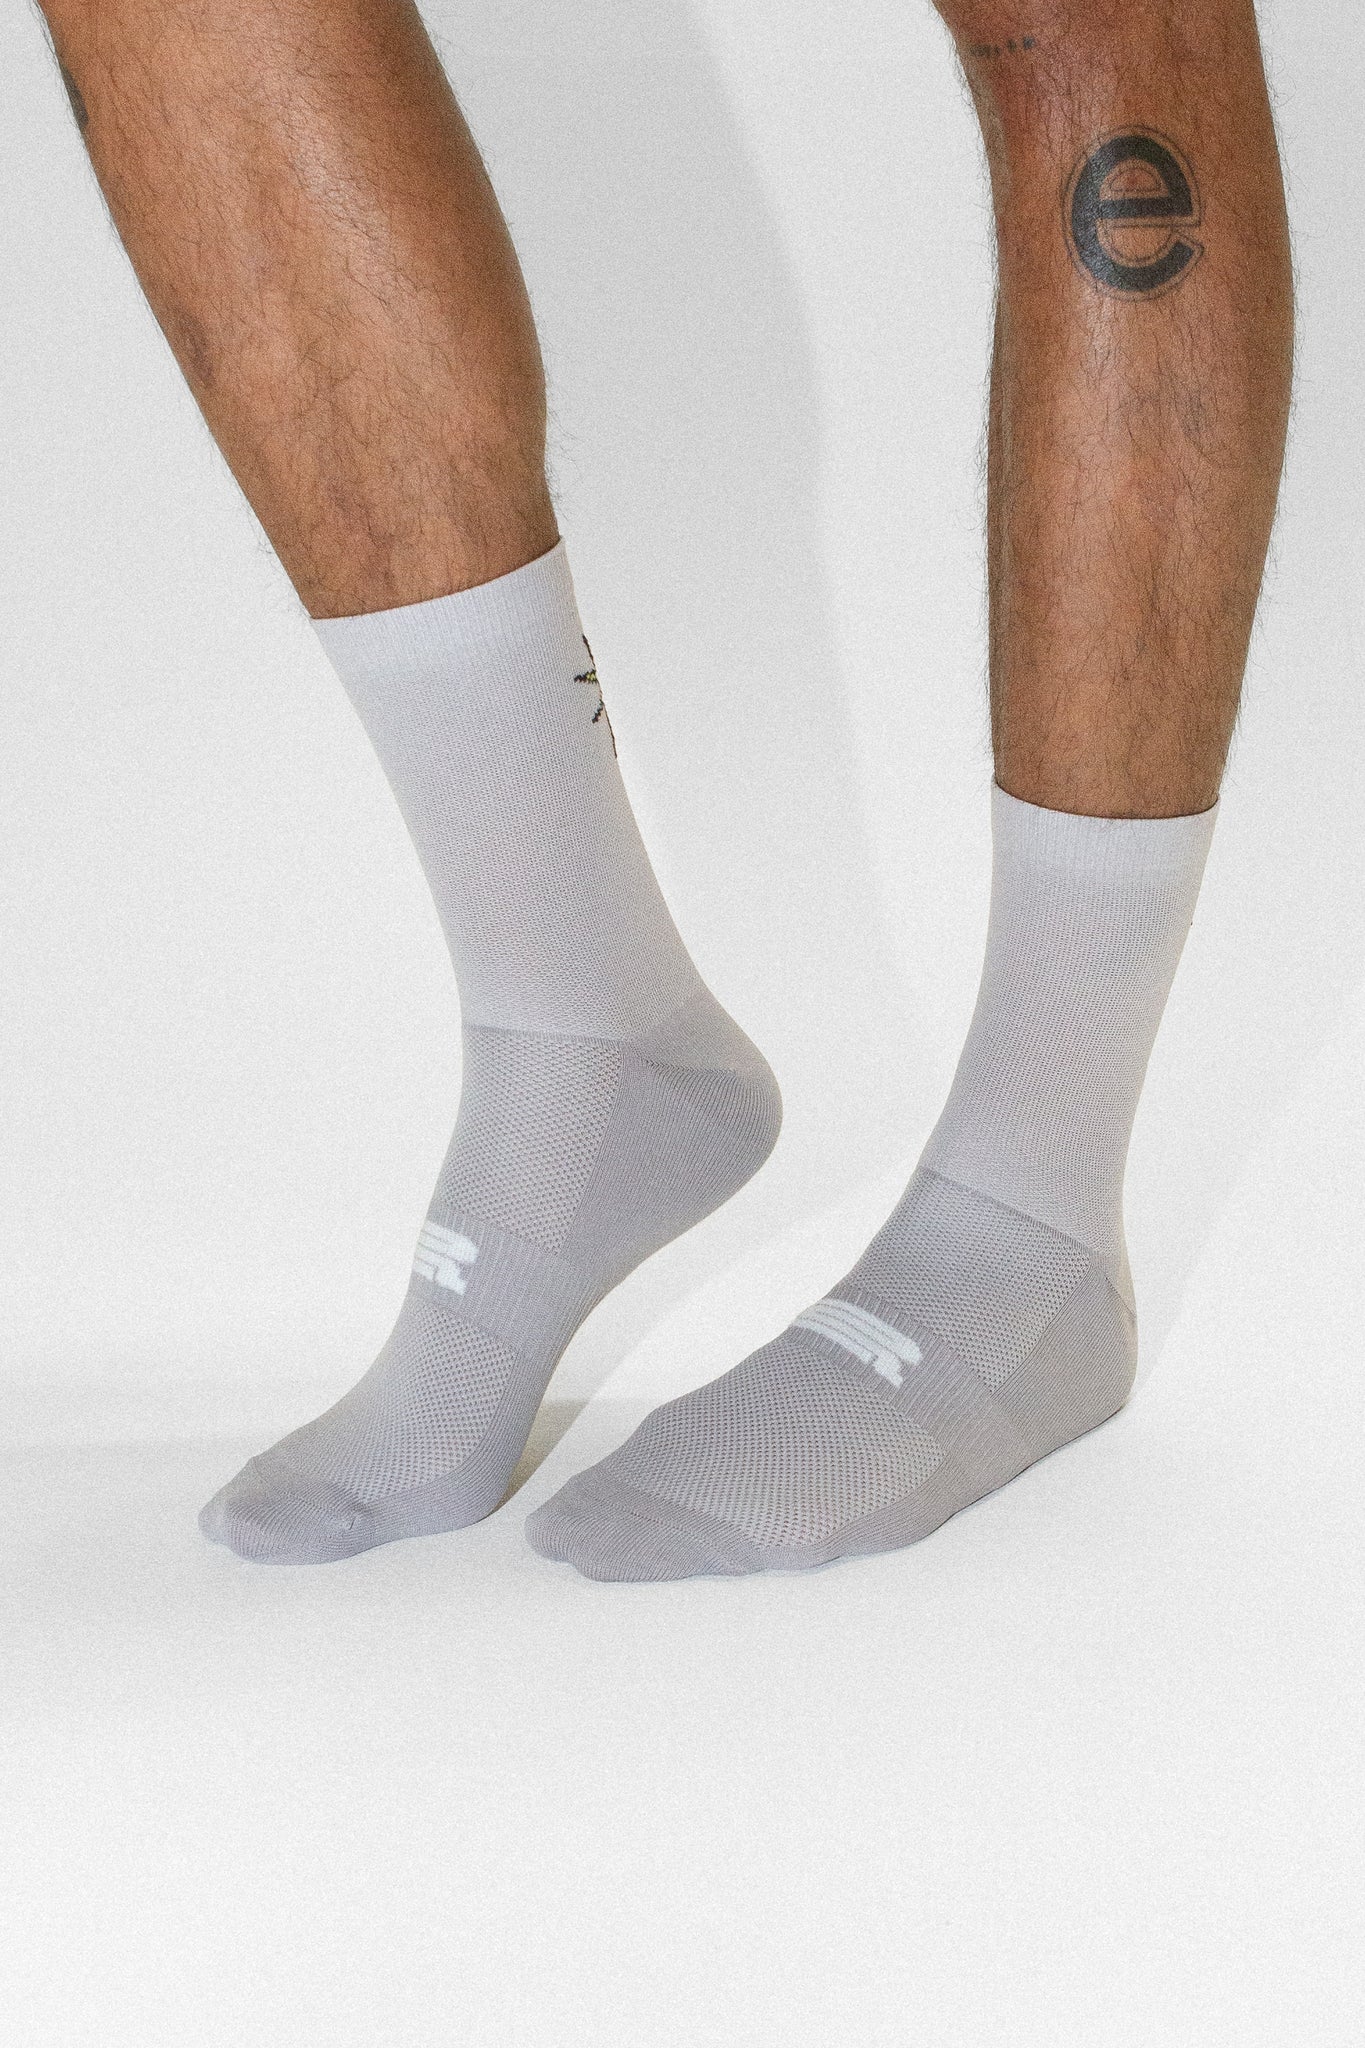 'Forme/Honte' 27 Socks